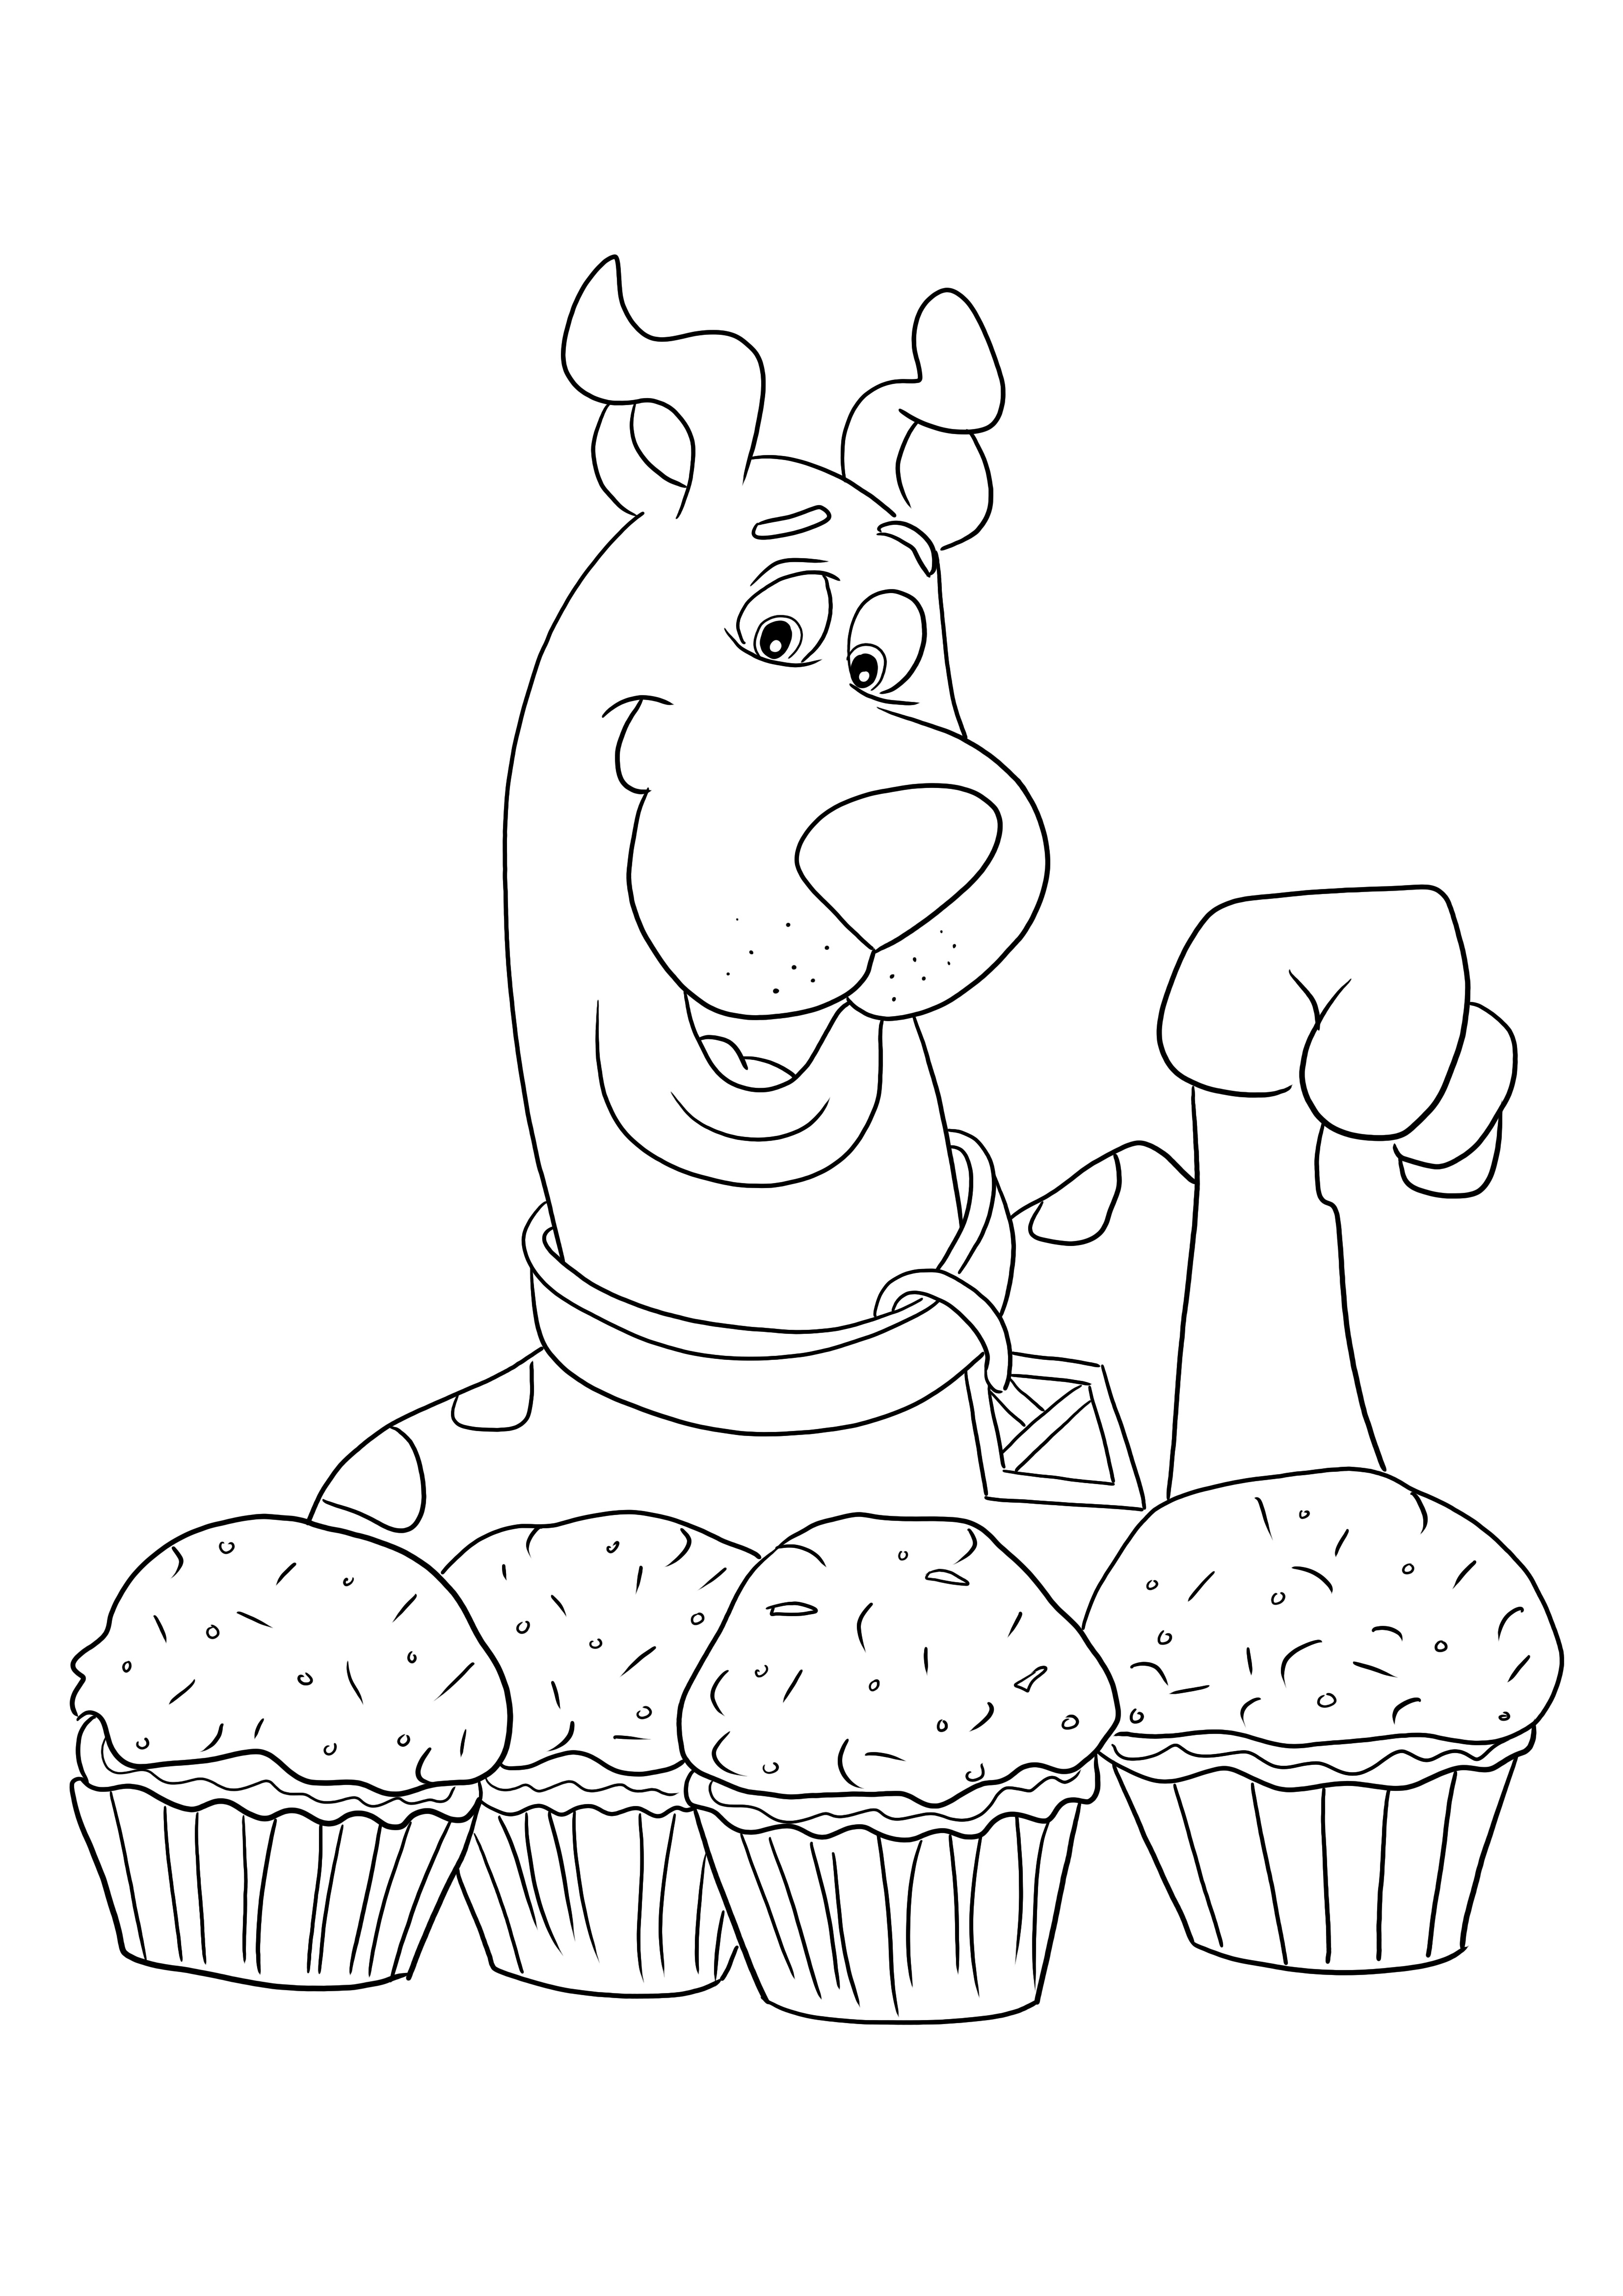 Scooby-Doo en zijn favoriete cupcakes gratis inkleuren en afbeelding downloaden kleurplaat